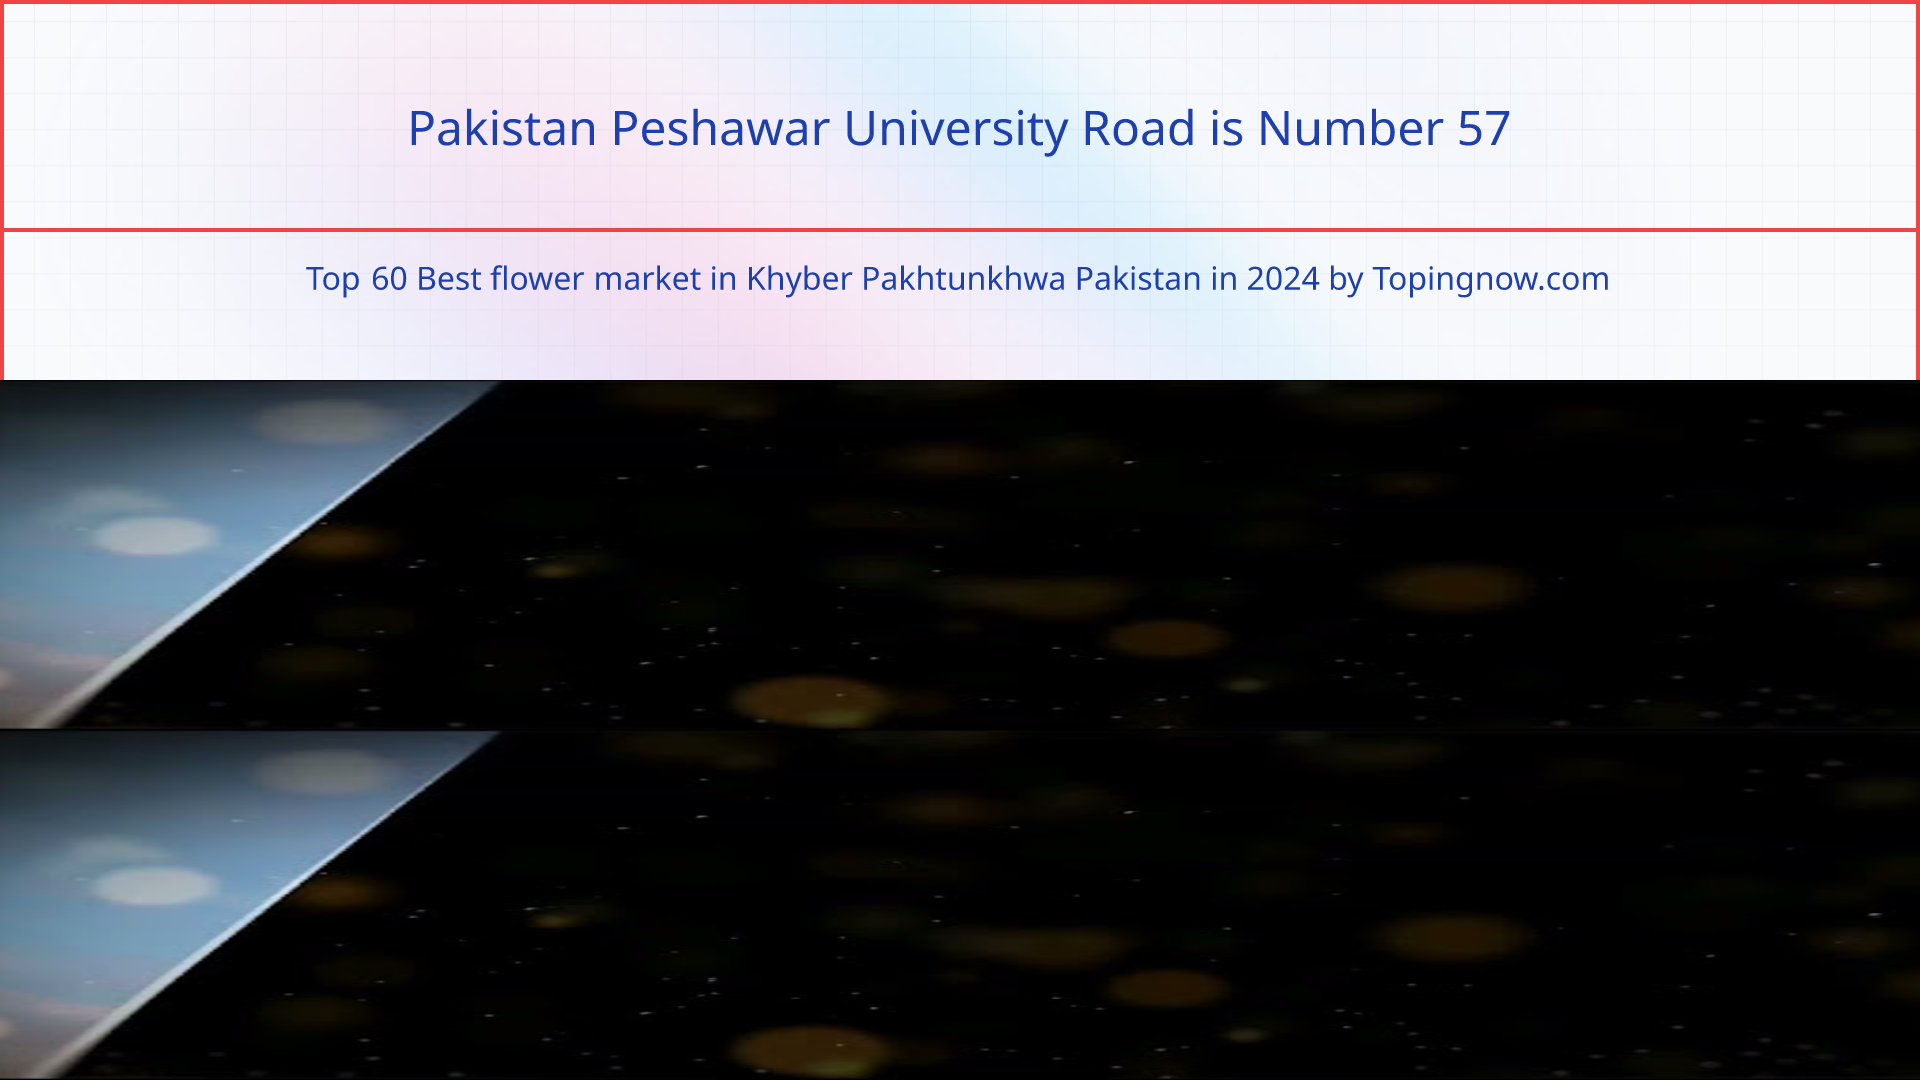 Pakistan Peshawar University Road: Top 60 Best flower market in Khyber Pakhtunkhwa Pakistan in 2024